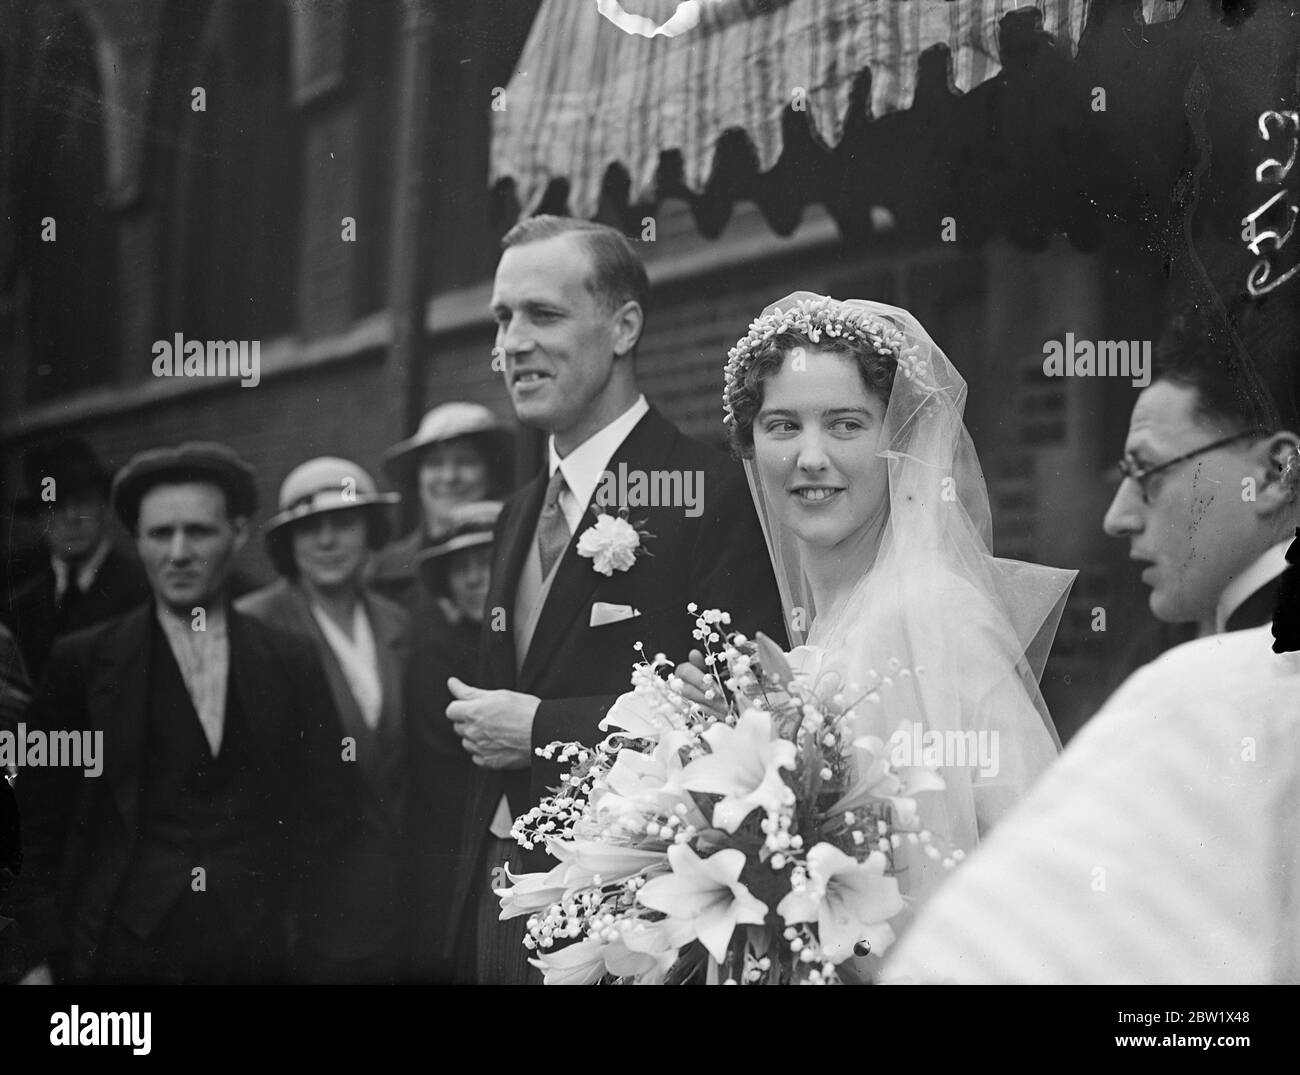 Verheiratet zur gleichen Zeit wie Herzog von Windsor. Londoner Hochzeitsfeier. Unter den Ansturm der Londoner Paare, die ihre Hochzeit organisieren, um zur gleichen Zeit wie die der Herzog und Herzogin von Windsor waren Herr J. G. Lockhart und Miss M. C. M. Gordon Tochter des verstorbenen Brigadier General A. F. Gordon D. S. O., Die am St. Mary's, Cadogan Square verheiratet waren. Foto zeigt: Die Braut und der Bräutigam nach der Zeremonie. Juni 1937 Stockfoto